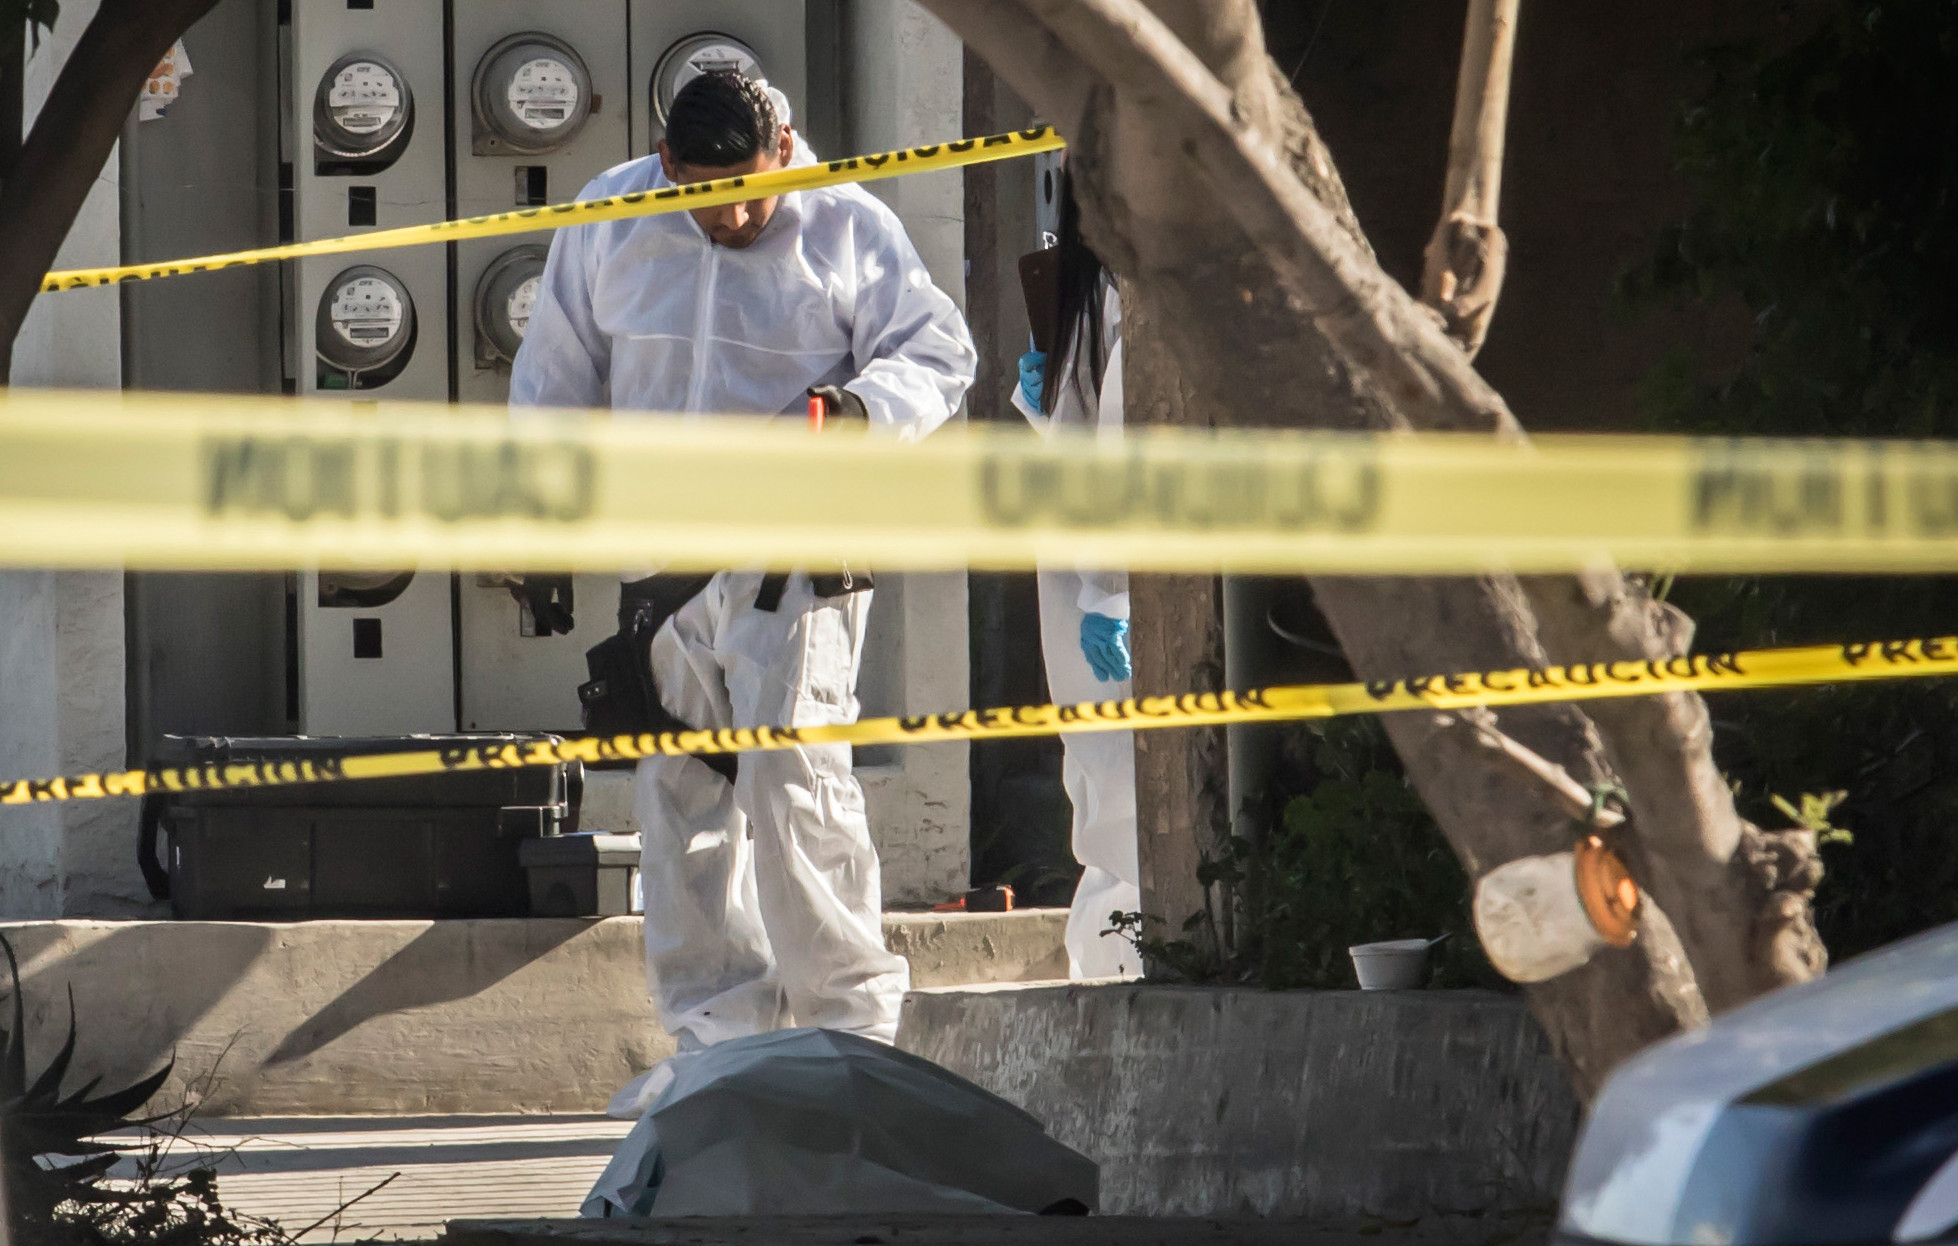  Tijuana vive días de violencia: decapitan a dos